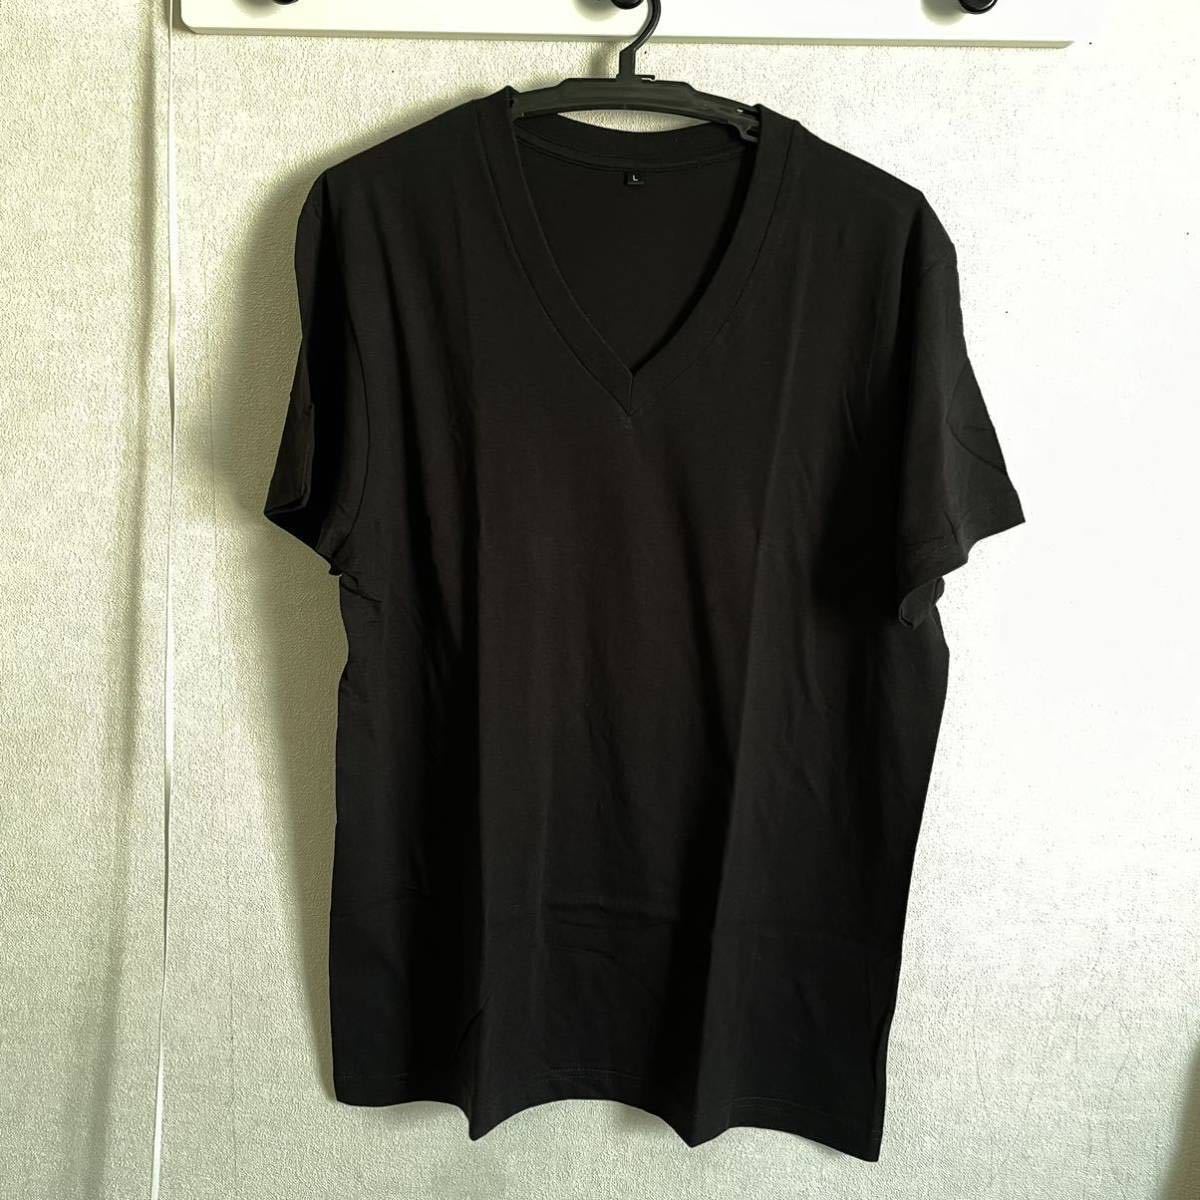 10枚組 L VネックTシャツ 綿100% 黒 ブラック V首 半袖 Tシャツ アンダーシャツ 男性 紳士 下着 メンズ インナー シャツ 半袖シャツ 定番♪_画像2